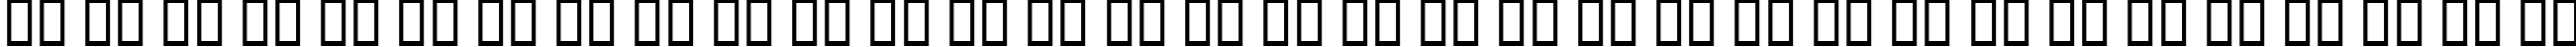 Пример написания русского алфавита шрифтом Farang